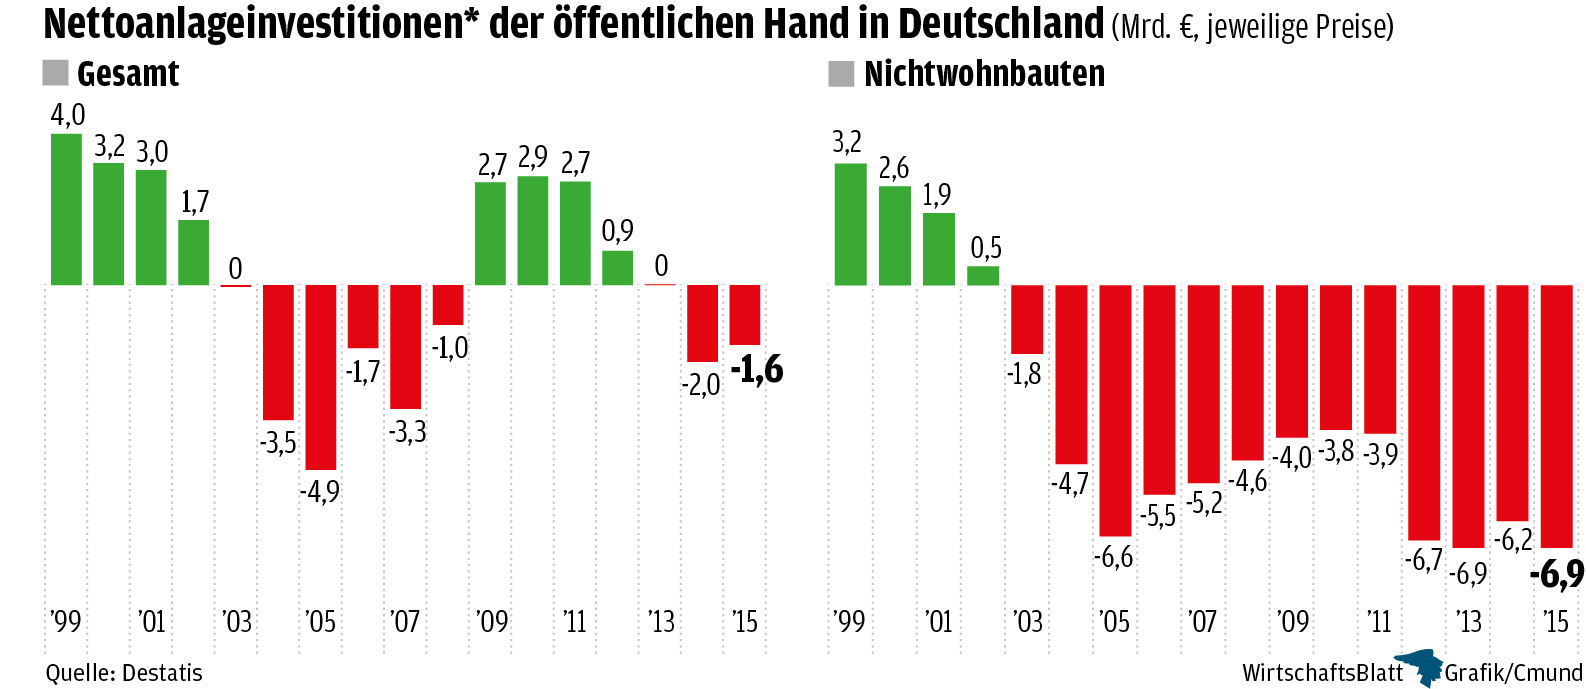 Επεξήγηση γραφήματος: Καθαρές επενδύσεις παγίων κεφαλαίων του γερμανικού δημοσίου, σε δις € (πράσινες στήλες = θετικές, κόκκινες στήλες = αρνητικές)